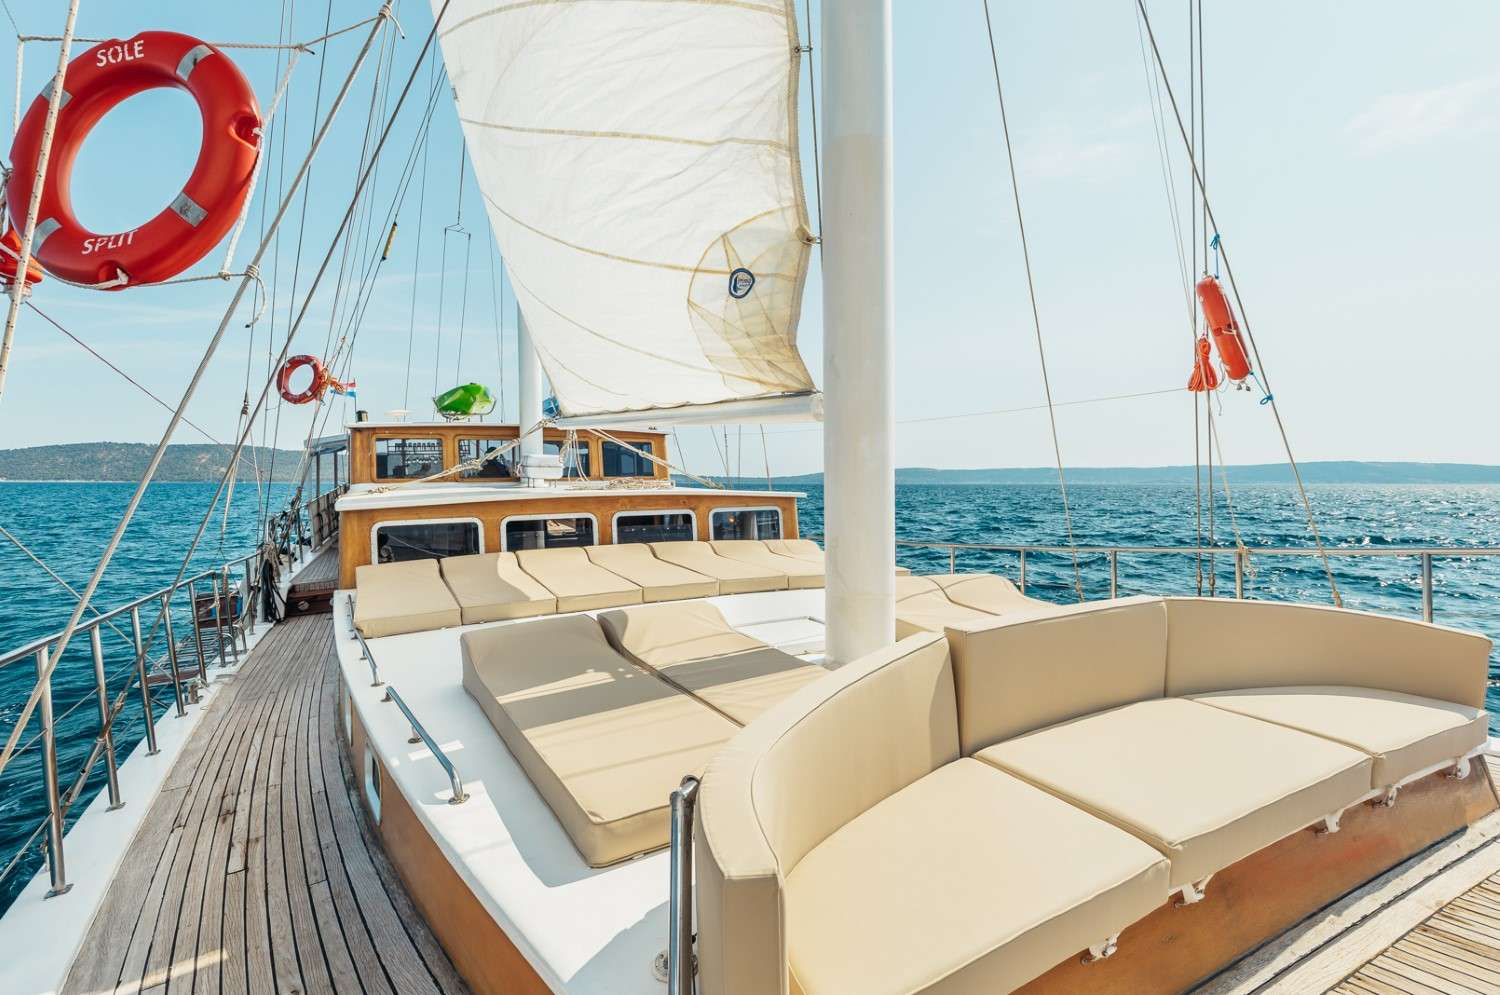 Sole  - Yacht Charter Kraljevica & Boat hire in Croatia 5